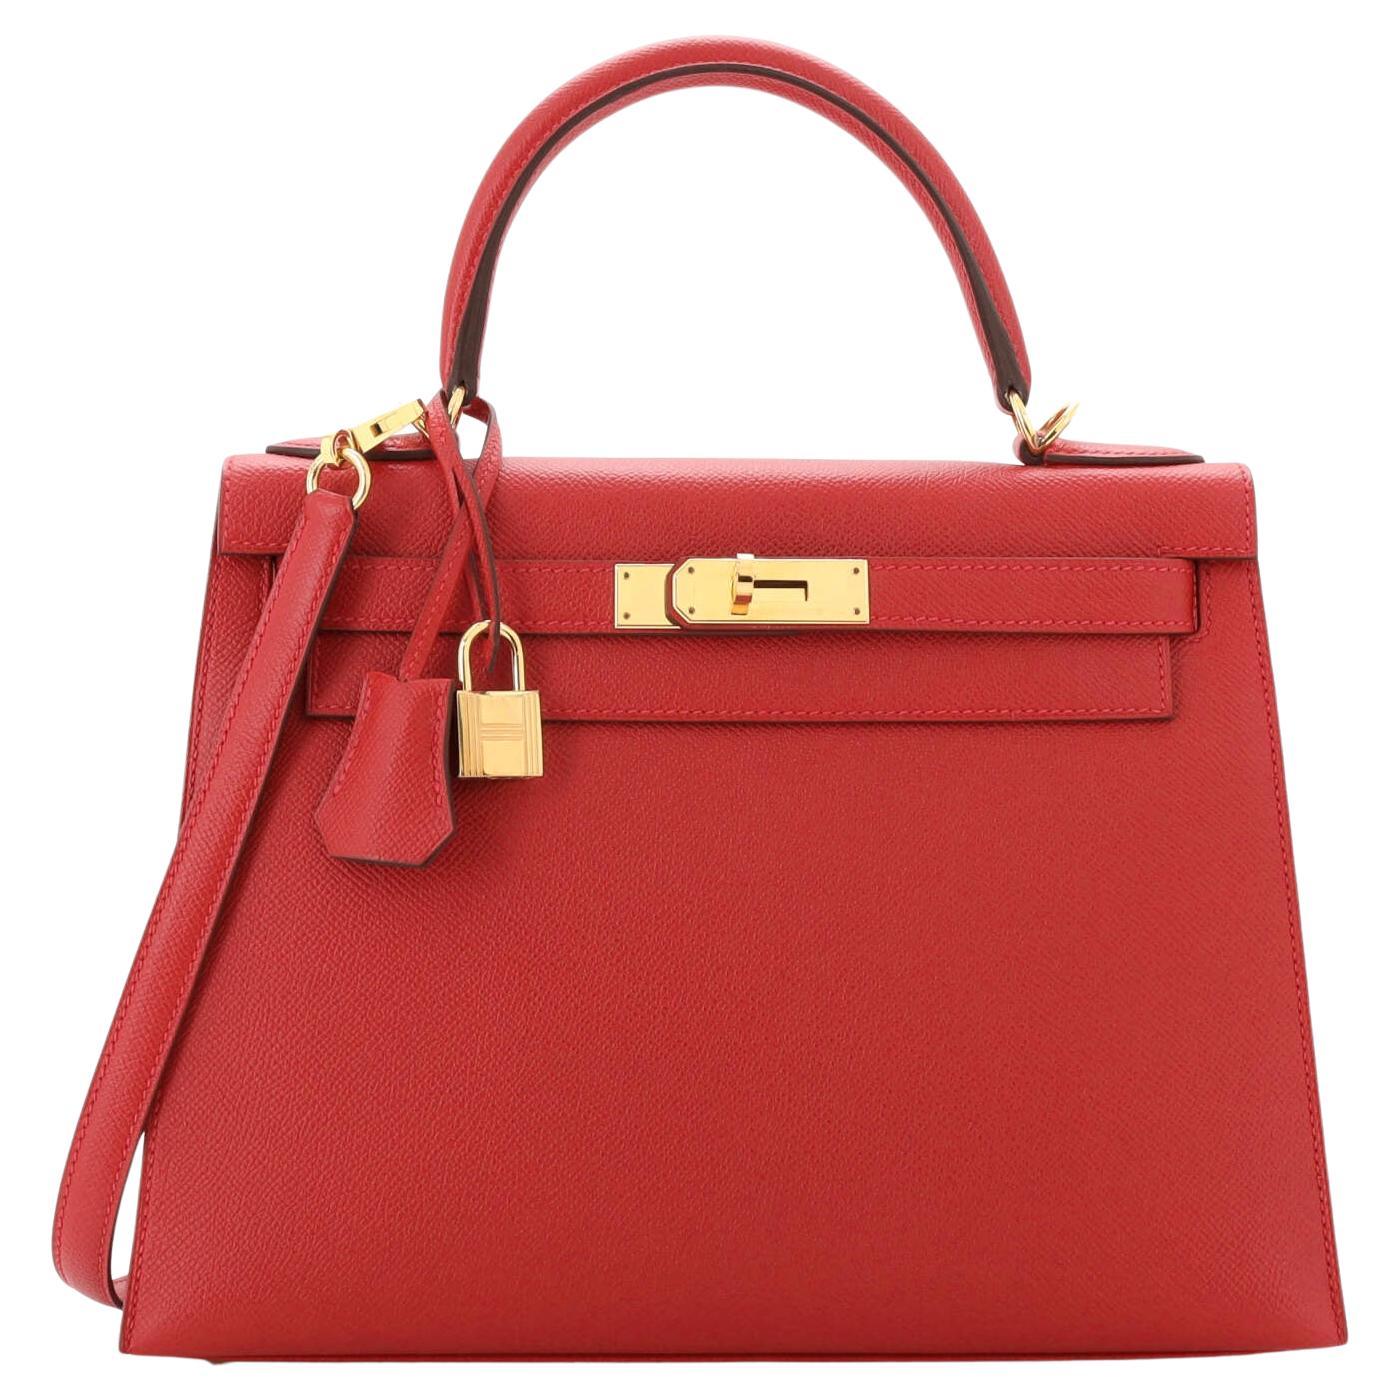 Hermes Kelly Handbag Rouge Casaque Epsom with Gold Hardware 28